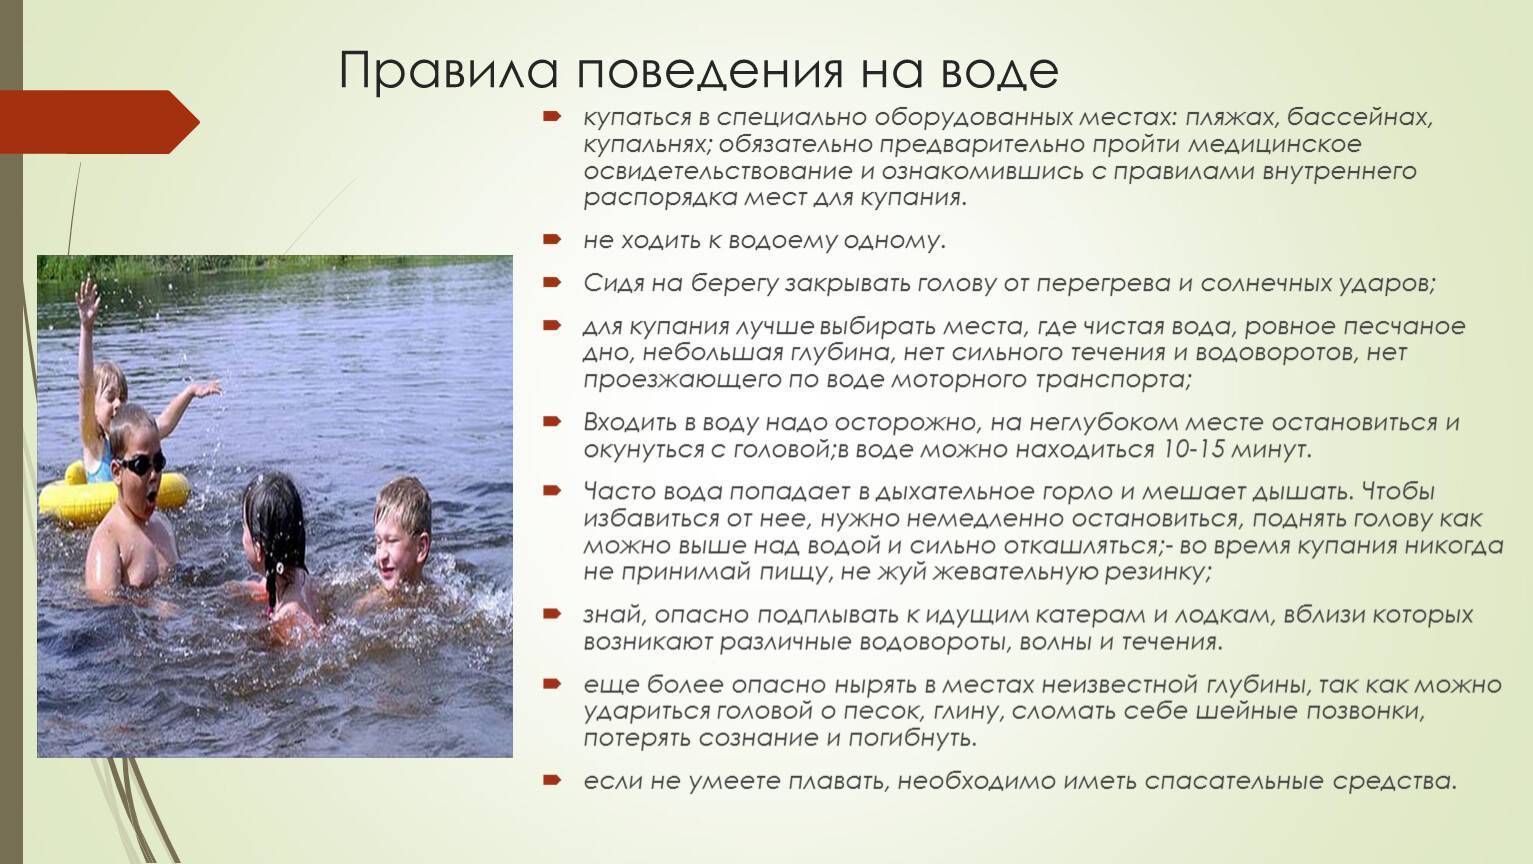 Доктор комаровский рассказал, в каком возрасте ребенка можно везти на море. и никак не раньше!